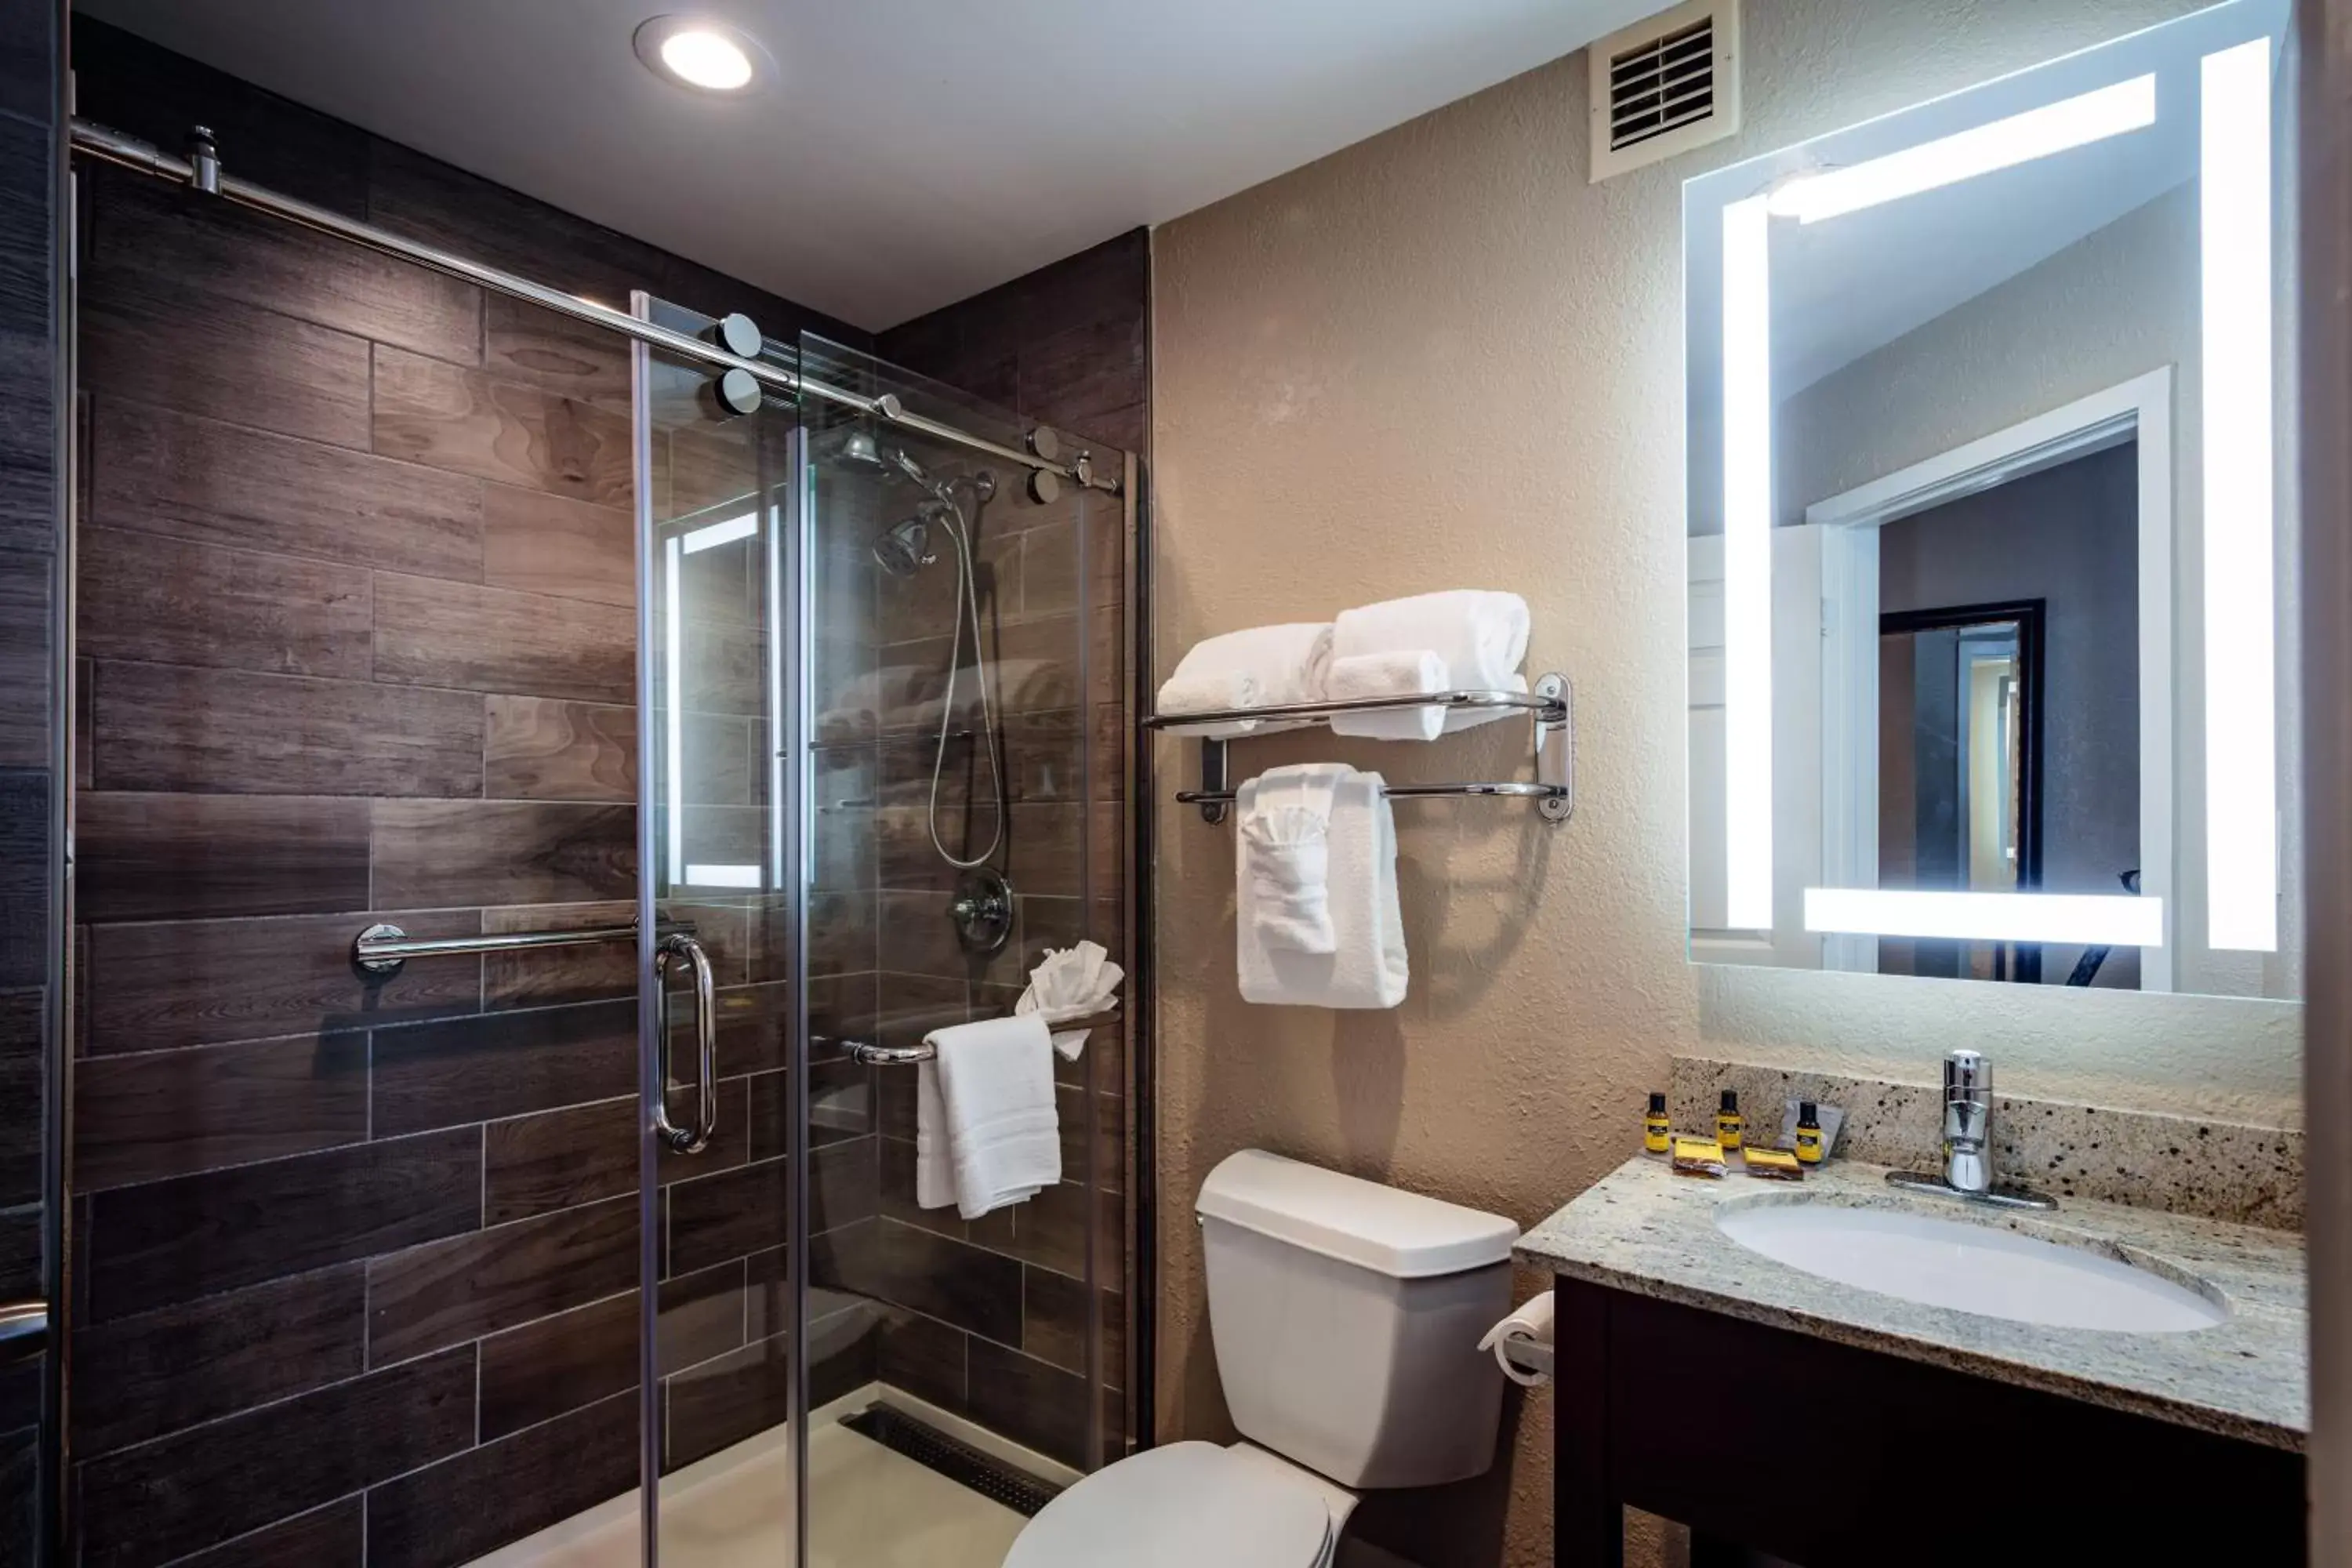 Shower, Bathroom in Best Western Plus Greenville I-385 Inn & Suites